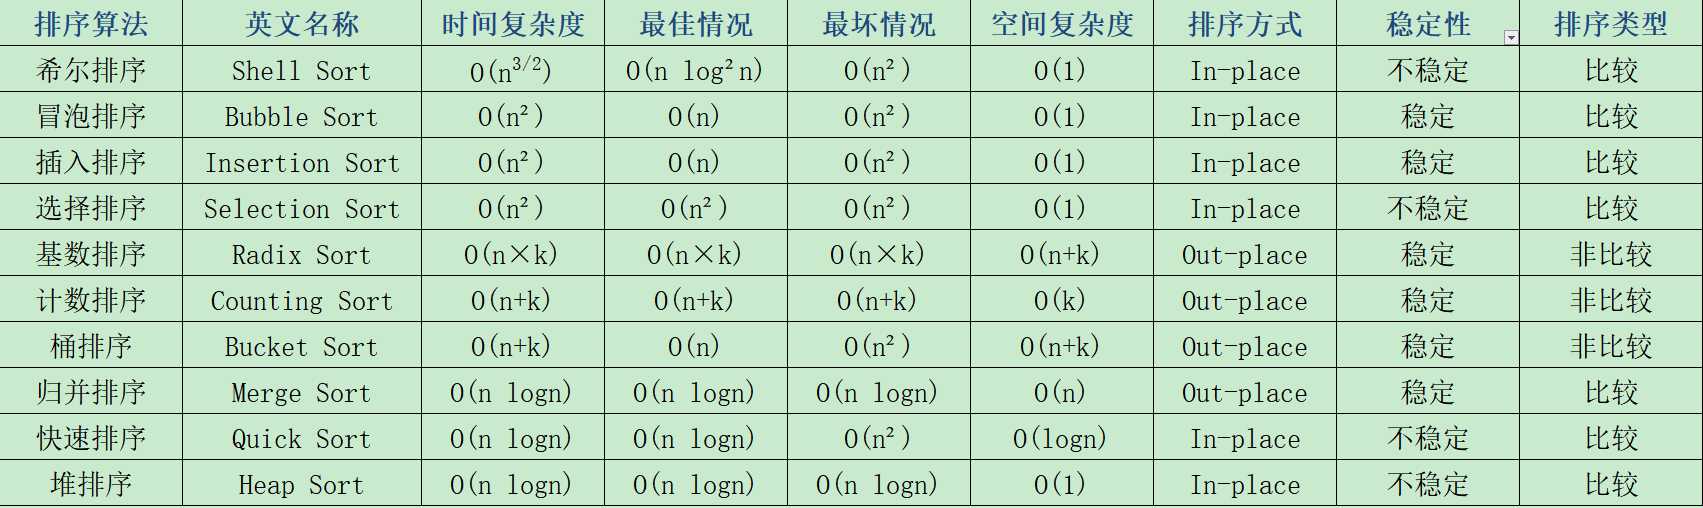 十大常用经典排序算法总结图_常用算法有哪些